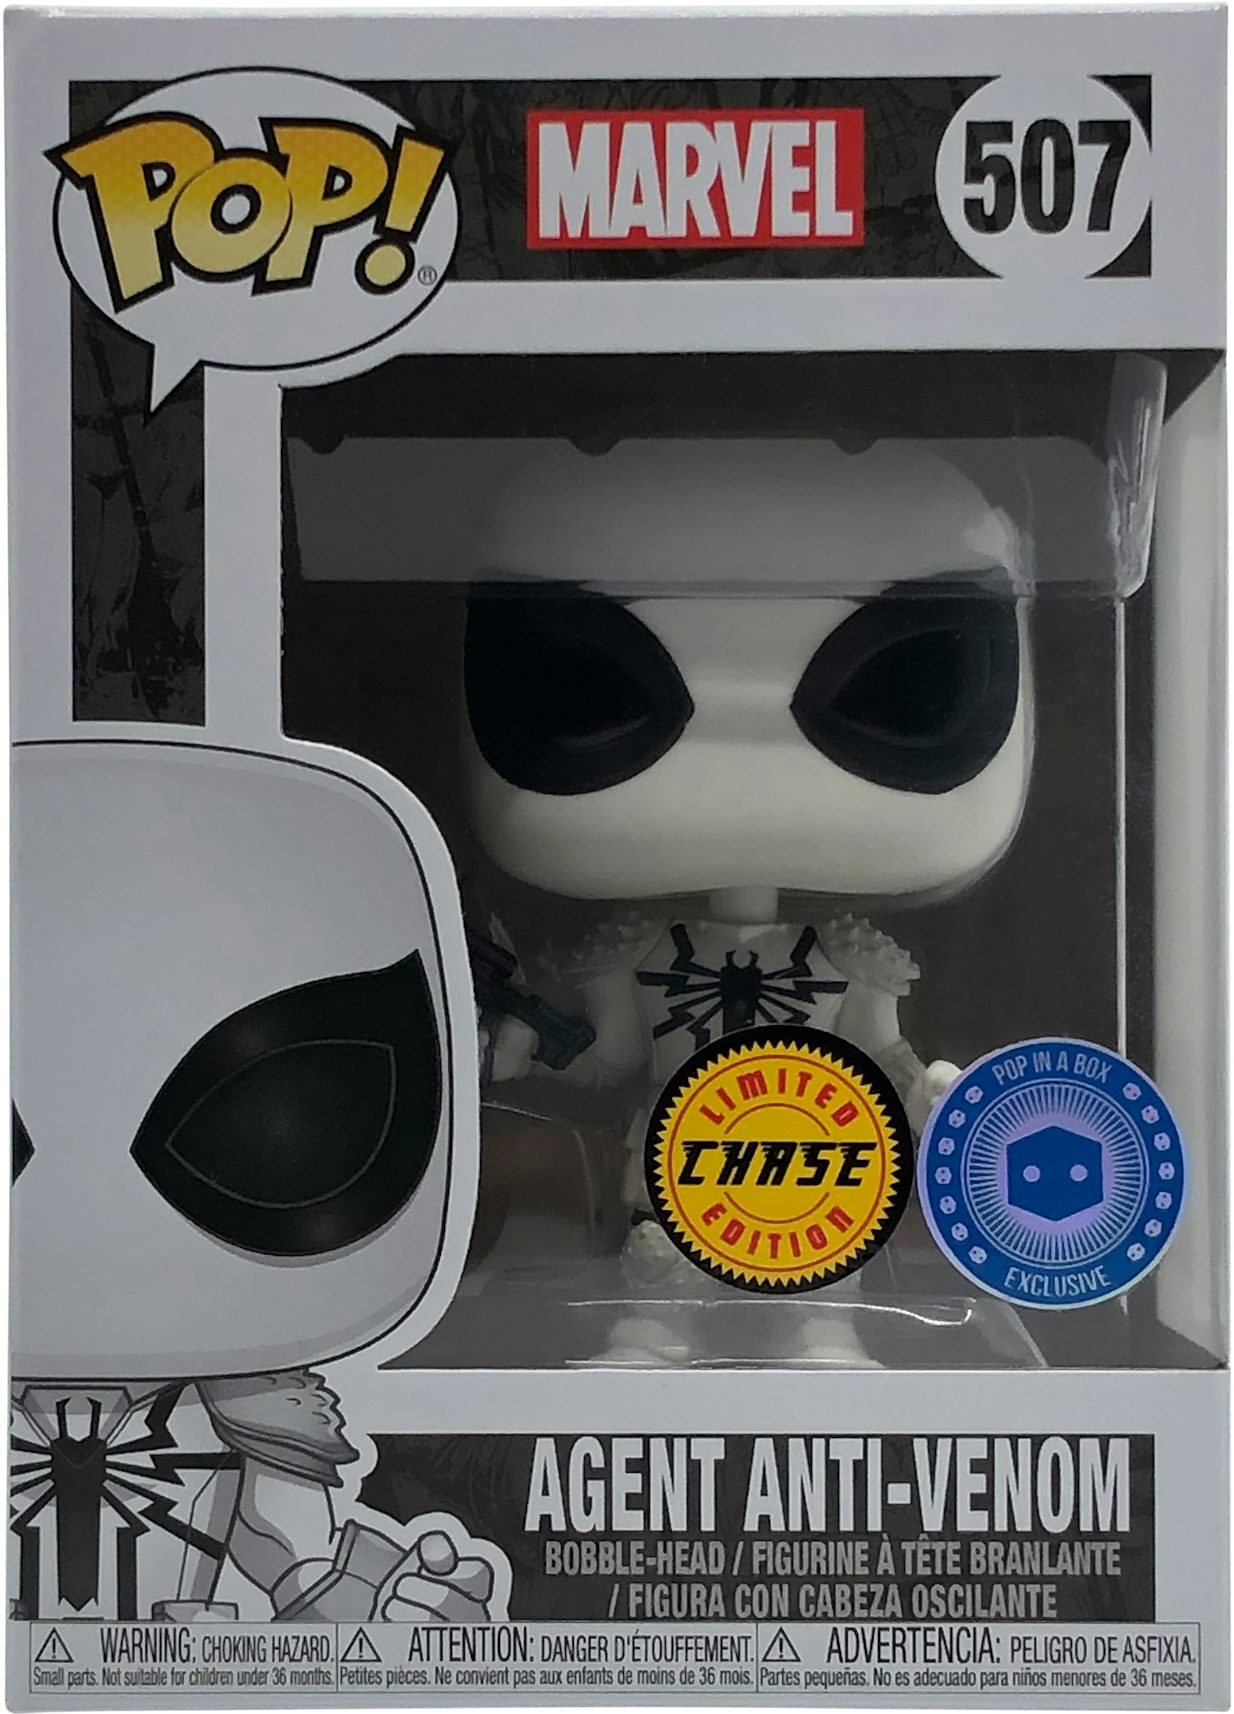 Funko Pop! Marvel Agent Anti-Venom (Chase) Pop In A Box Exclusive Figure  #507 - GB